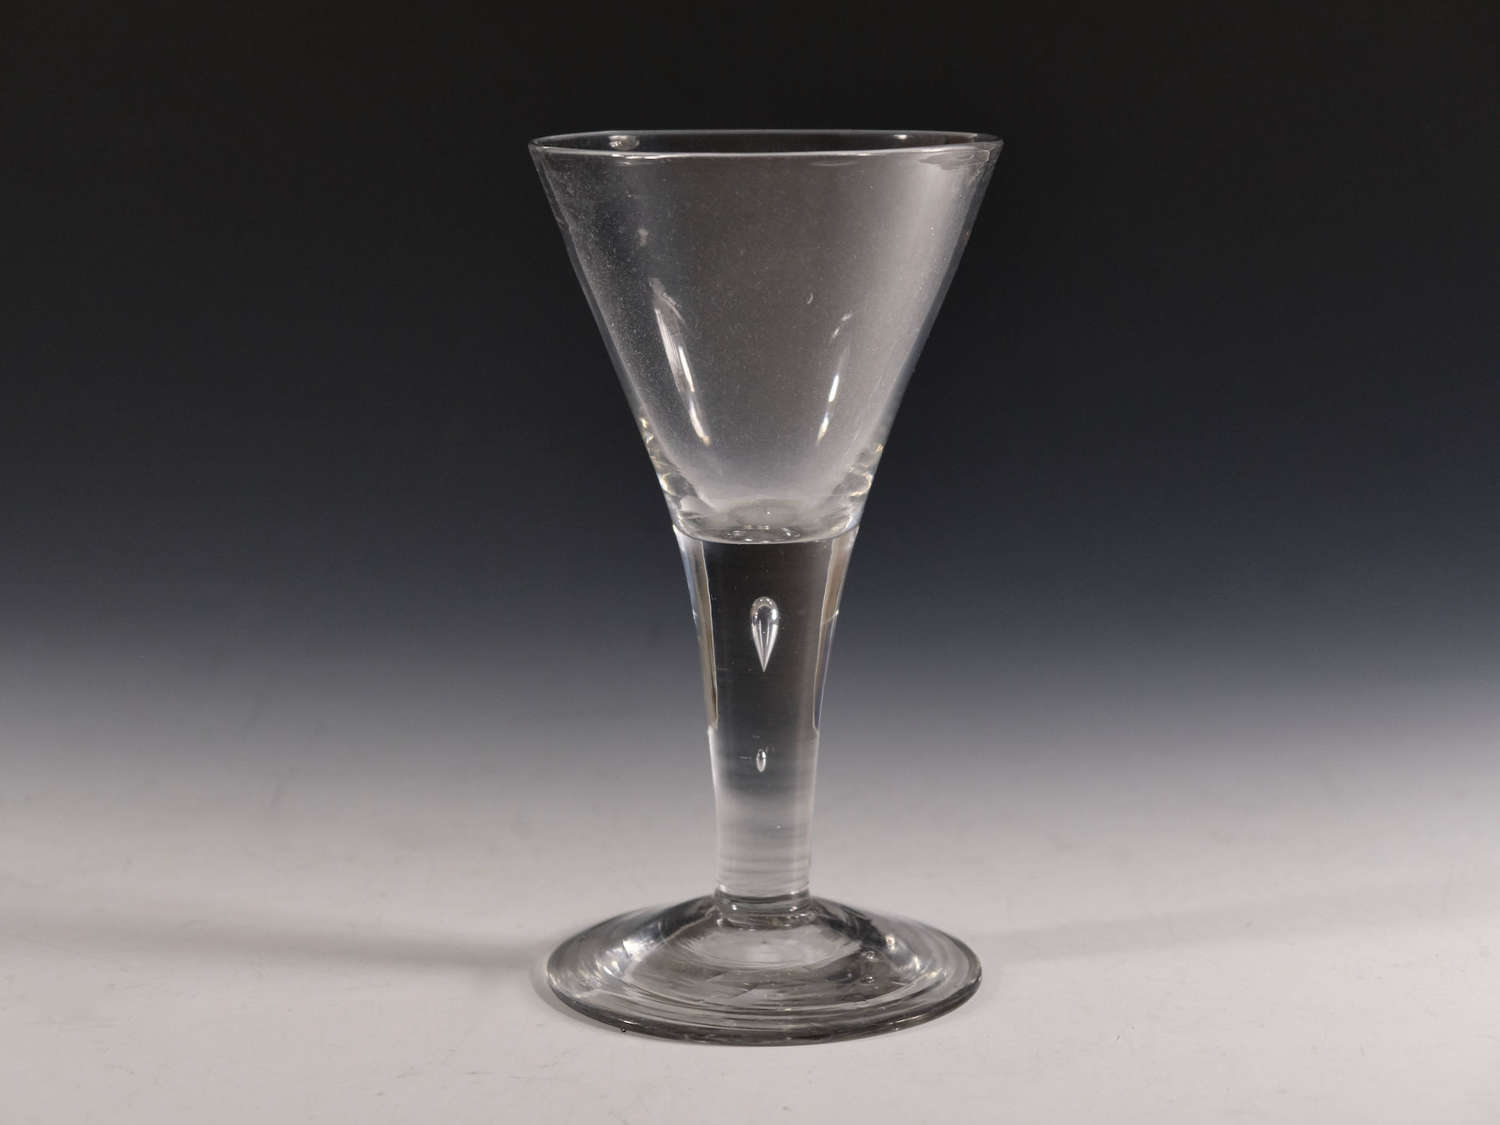 Antique glass plain stem wine goblet English c1750